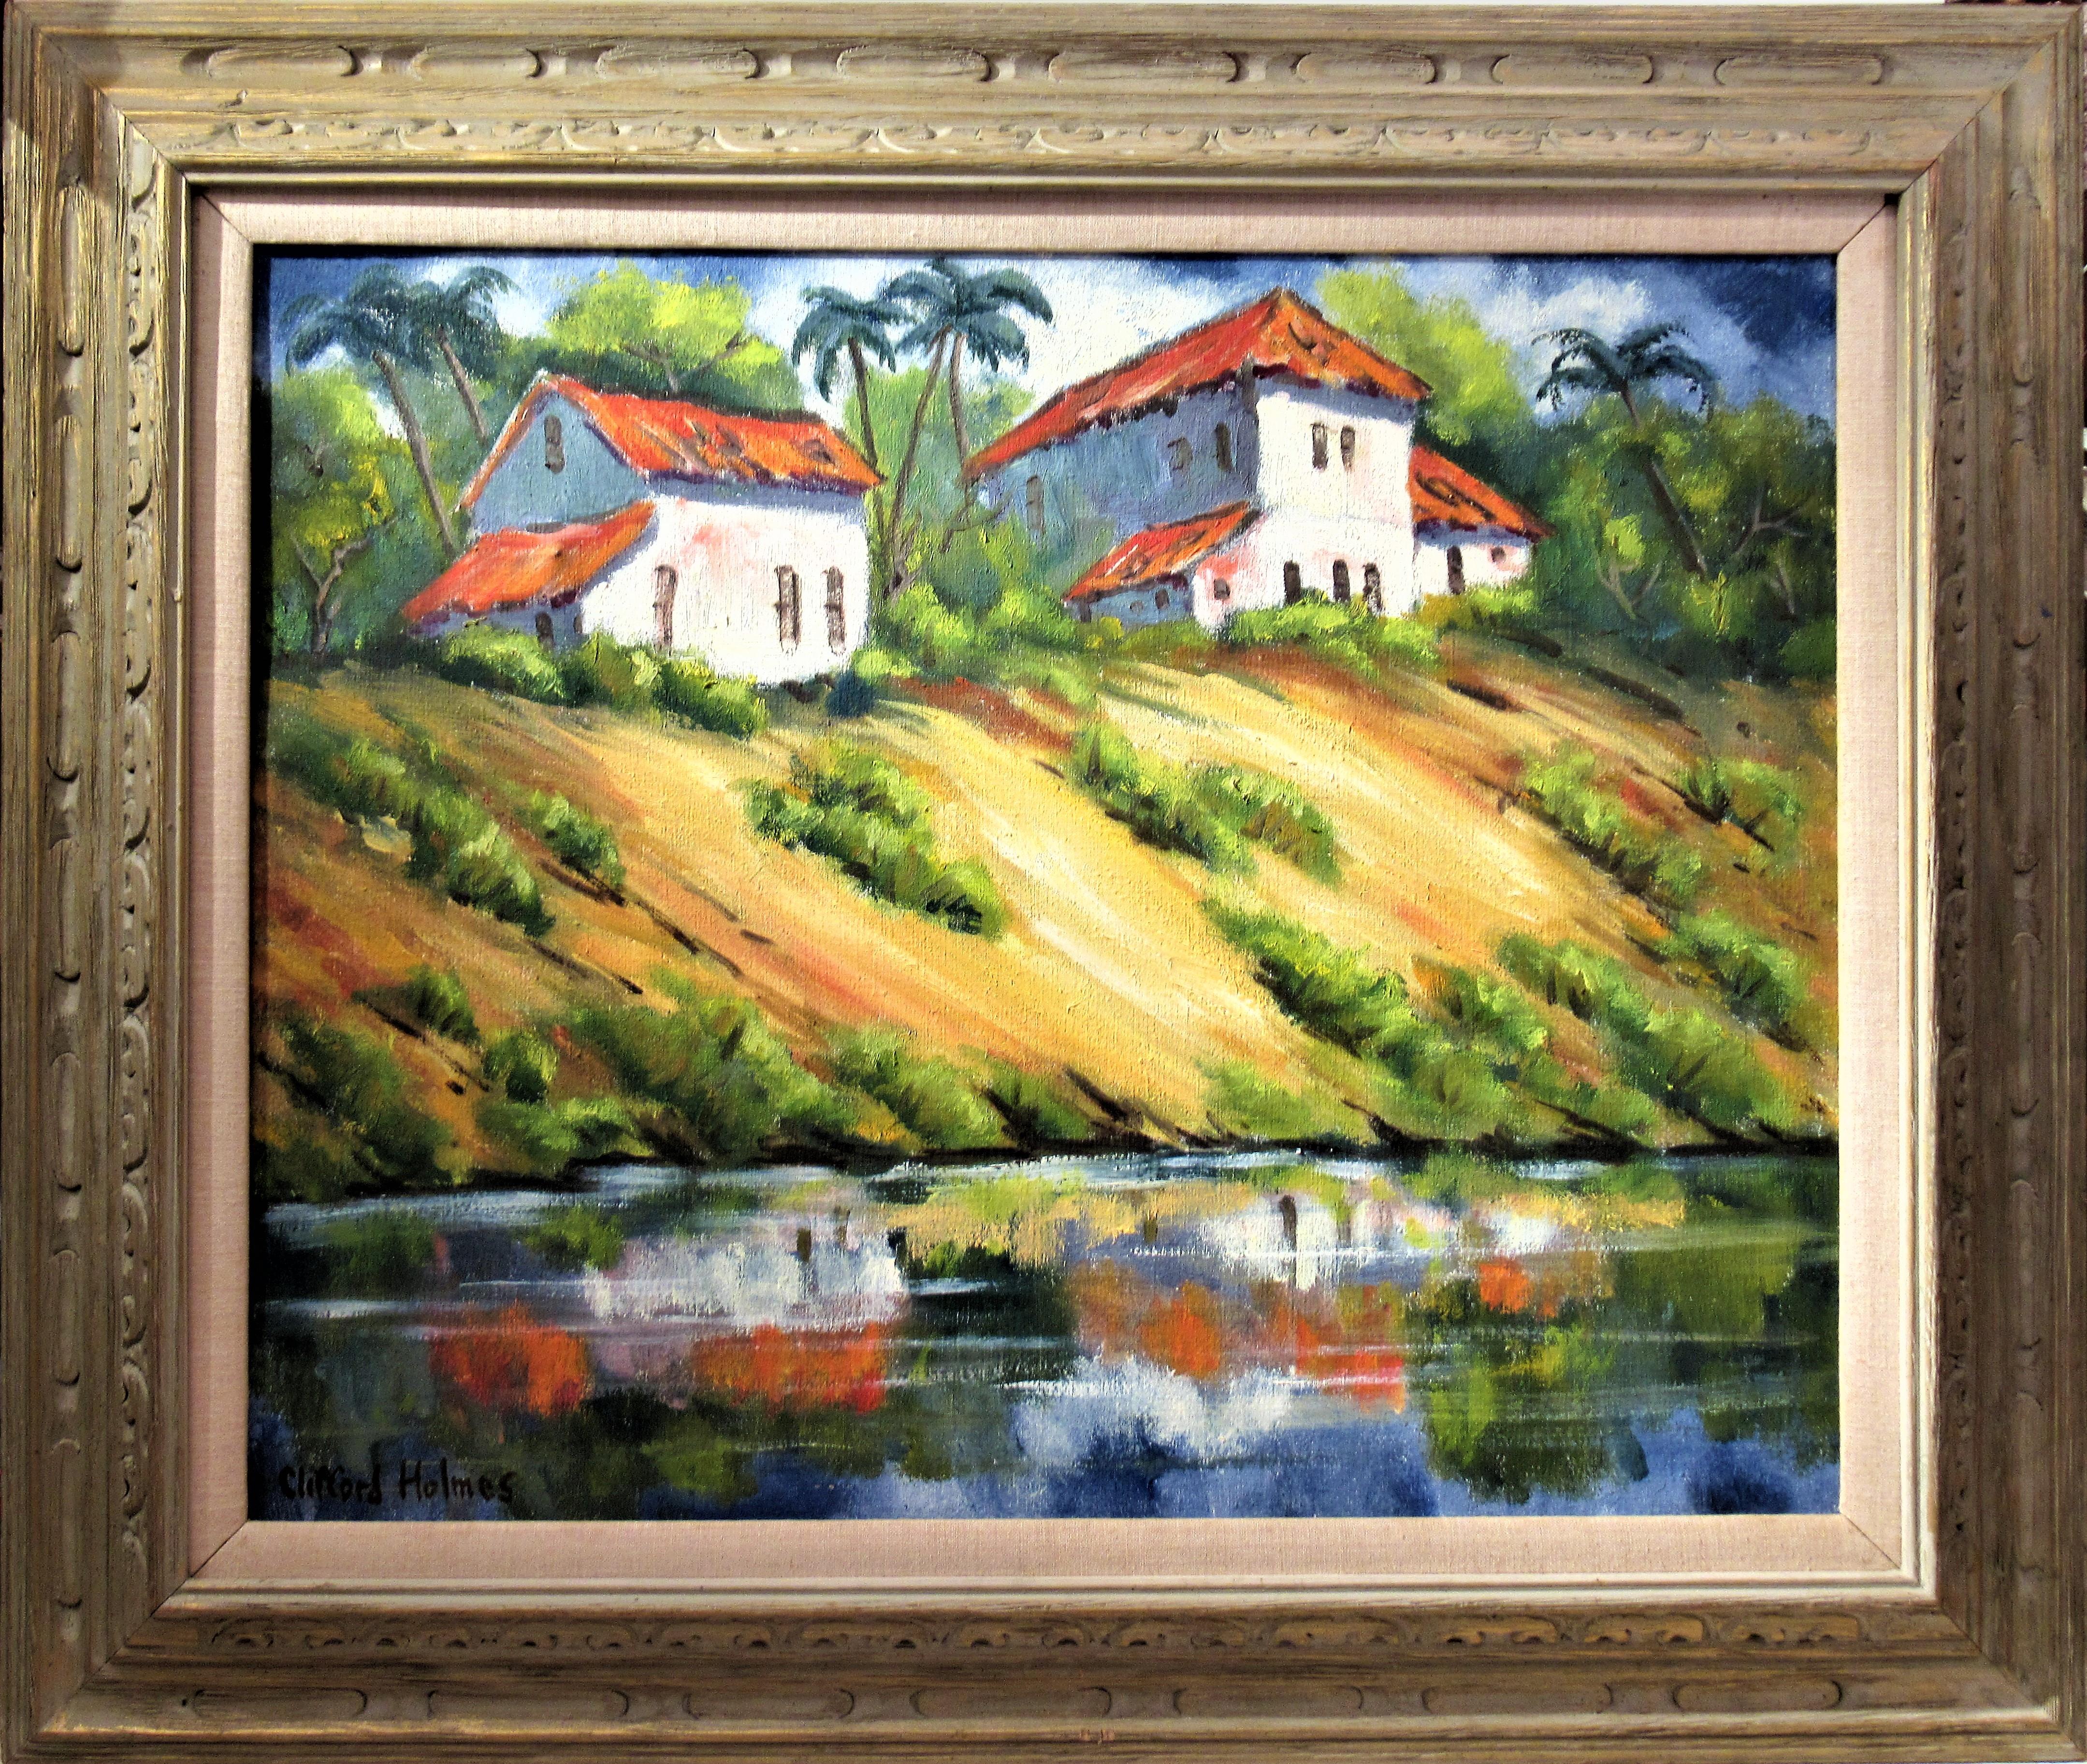 Clifford Holmes Figurative Painting – Landschaft mit Häusern und Teich, Kalifornien